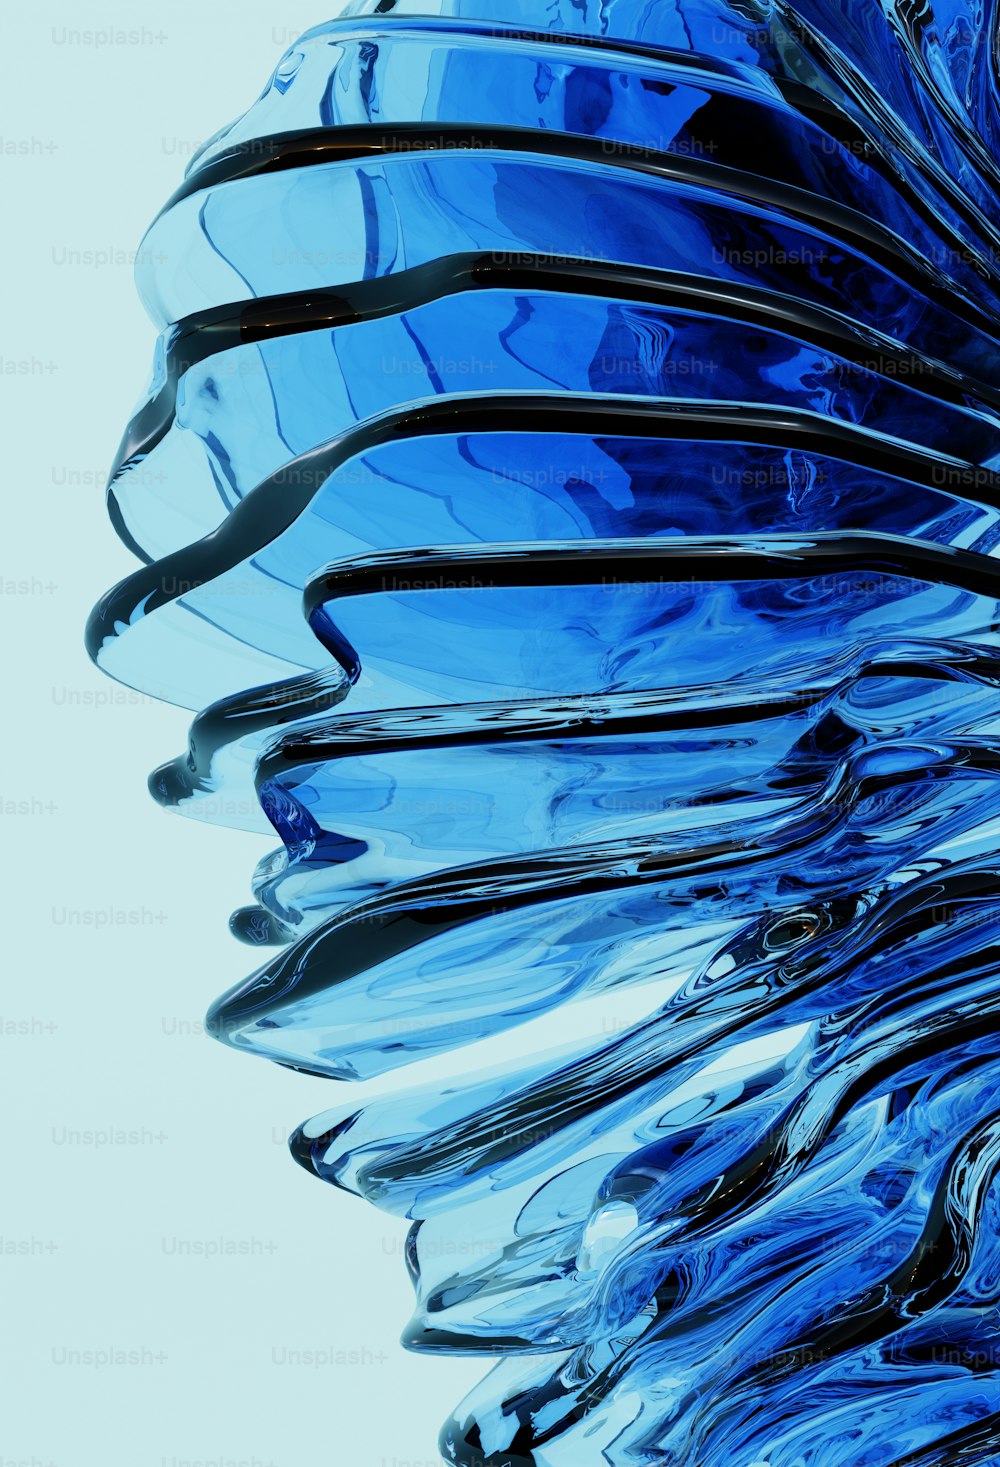 Un primer plano de un objeto de vidrio azul